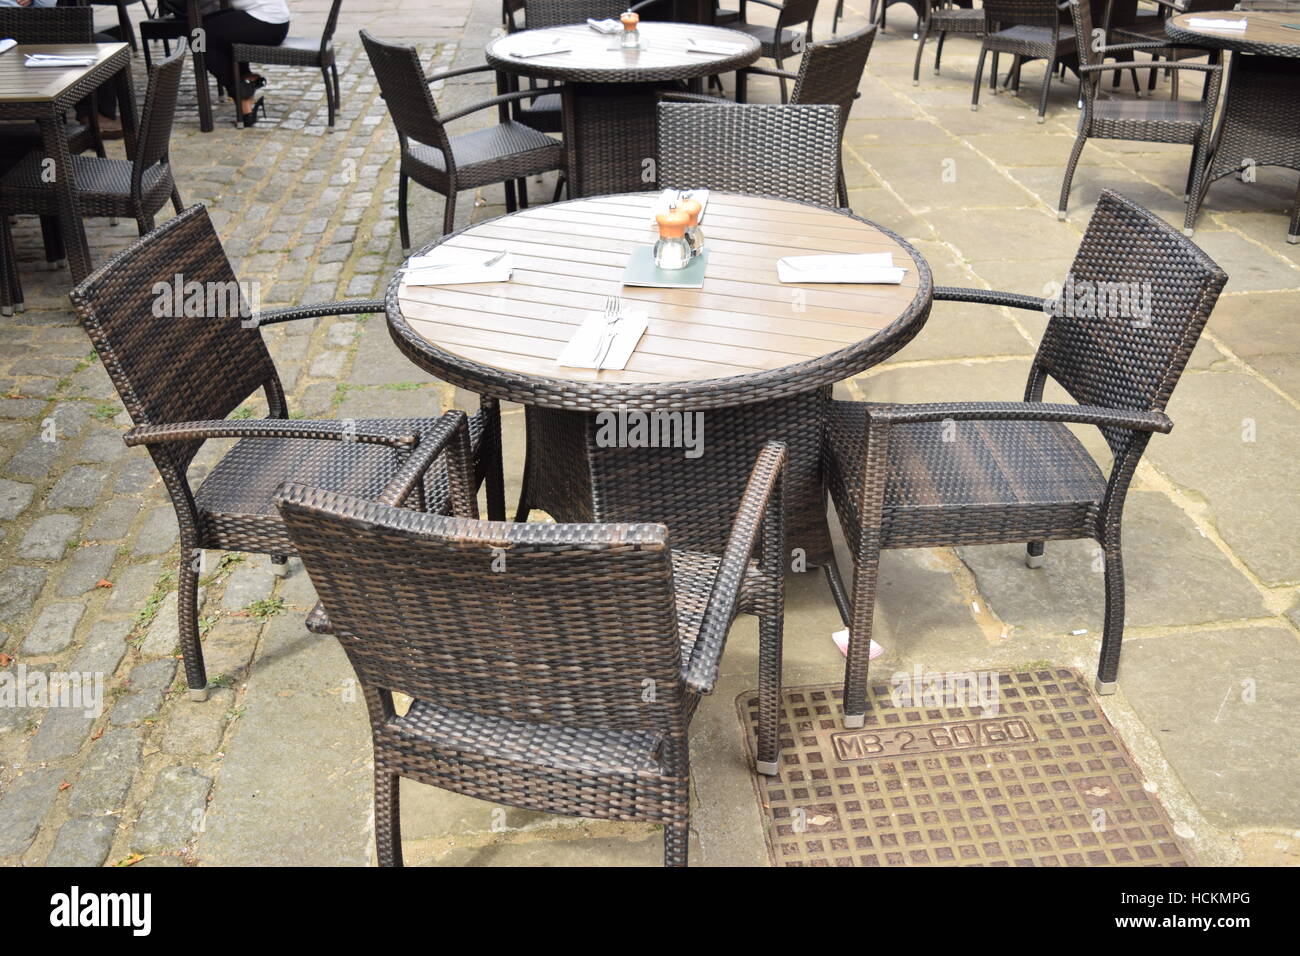 Gastgarten mit einem runden Tisch und Stühle braun Stockfotografie - Alamy